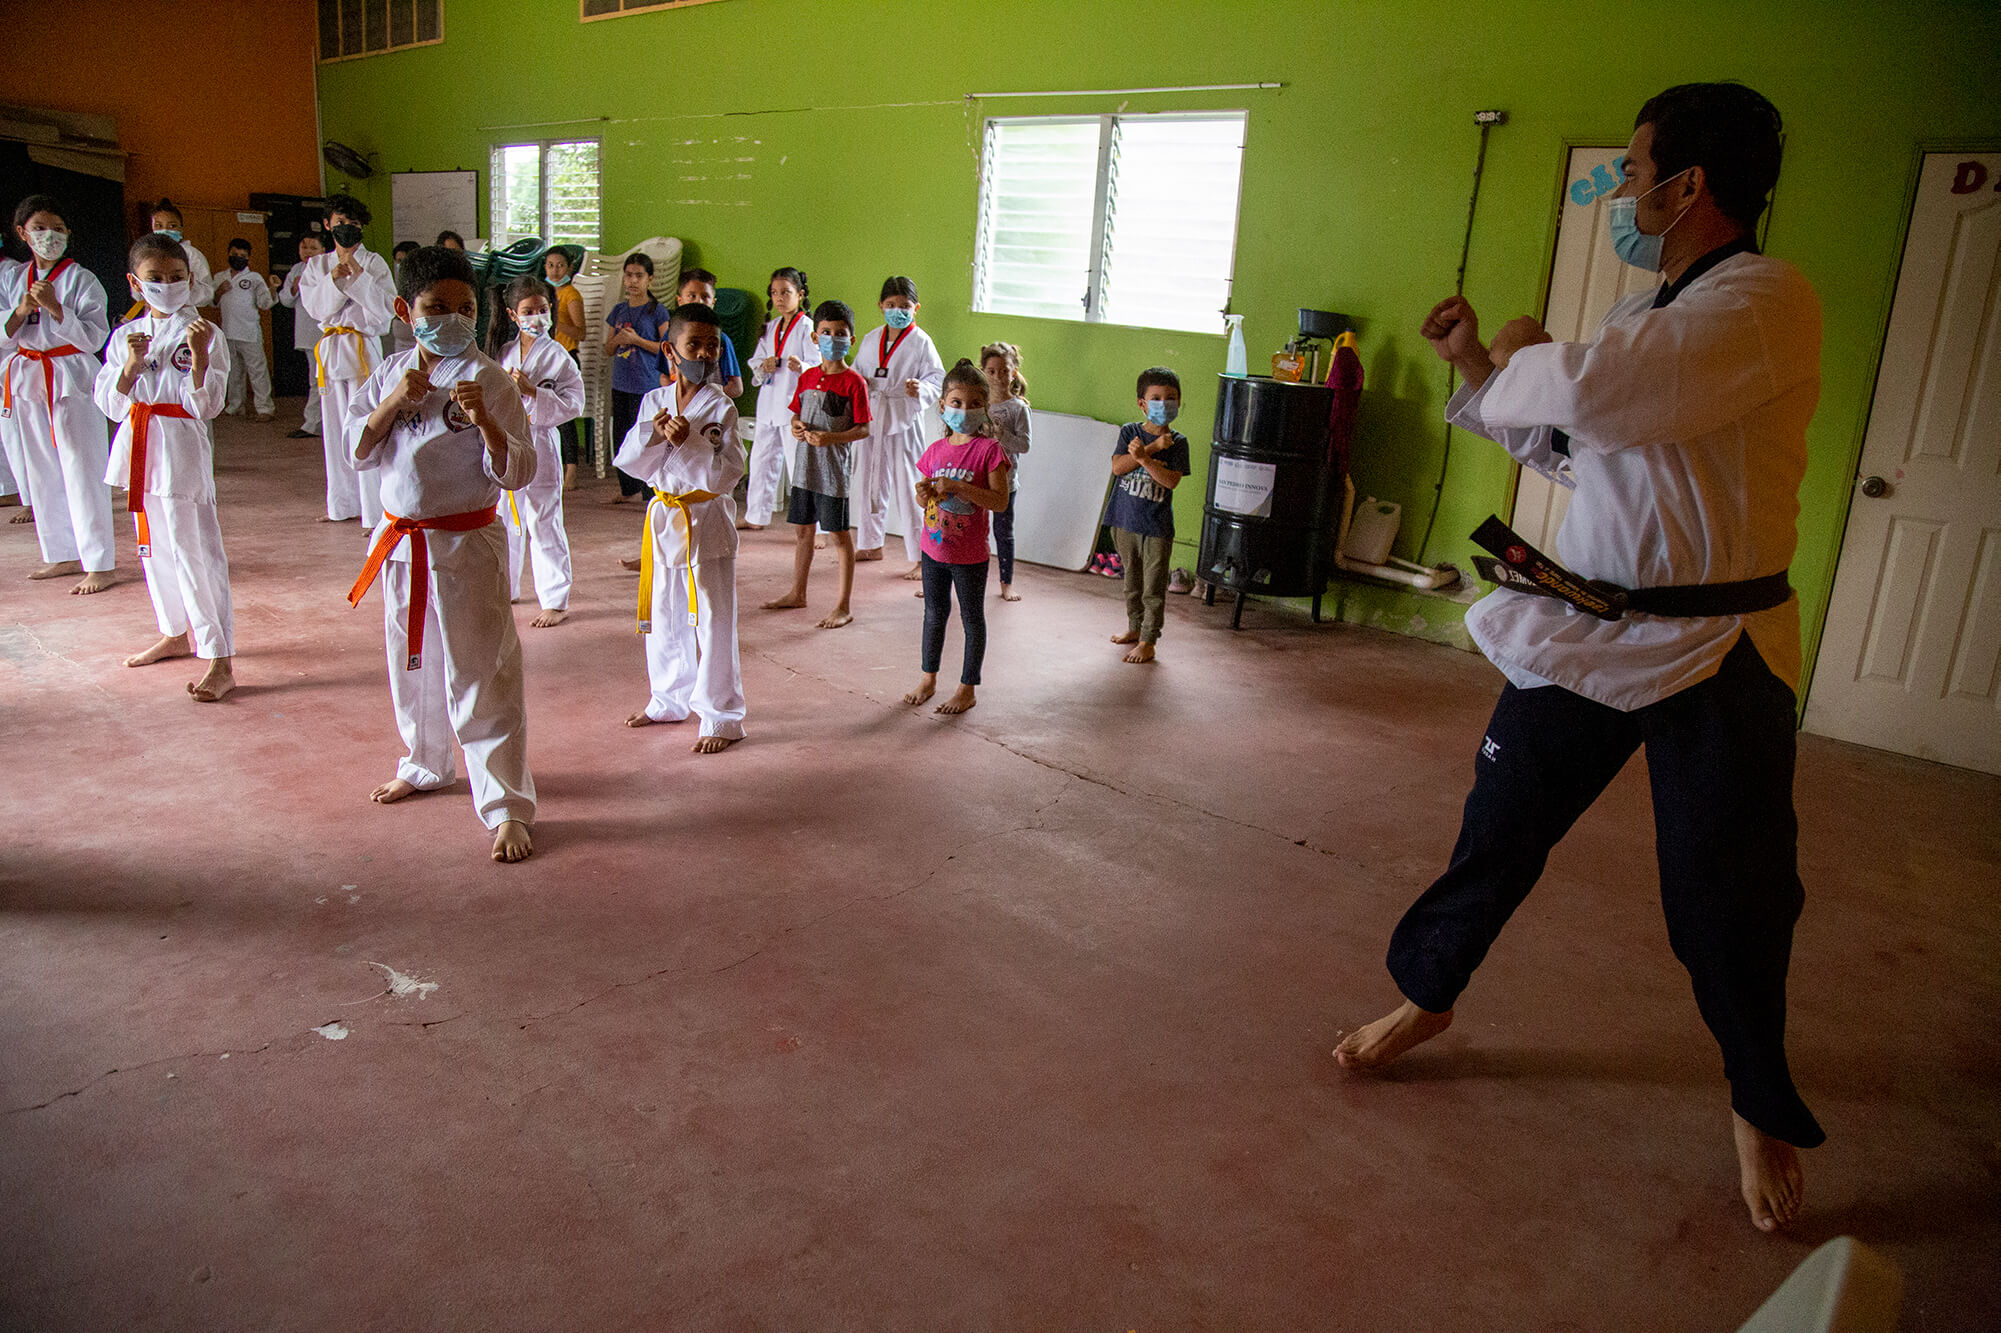 deporte en Honduras noticias karate fideicomiso deportes rivera hernandez taekwondo corrupción 2022 juventud de la en sps noticias hoy violencia juventud